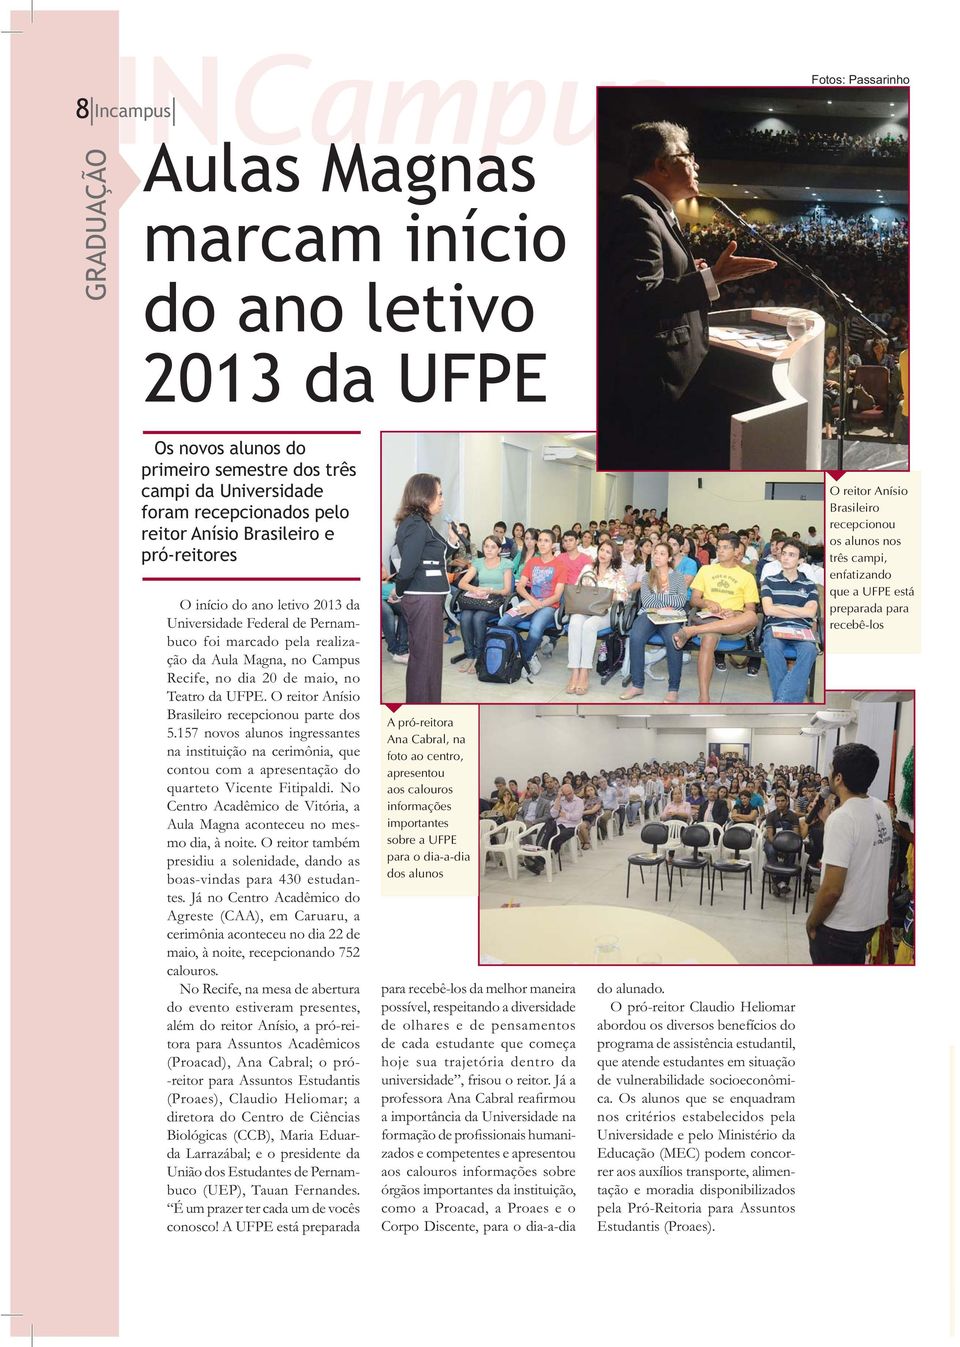 O reitor Anísio Brasileiro recepcionou parte dos 5.157 novos alunos ingressantes na instituição na cerimônia, que contou com a apresentação do quarteto Vicente Fitipaldi.